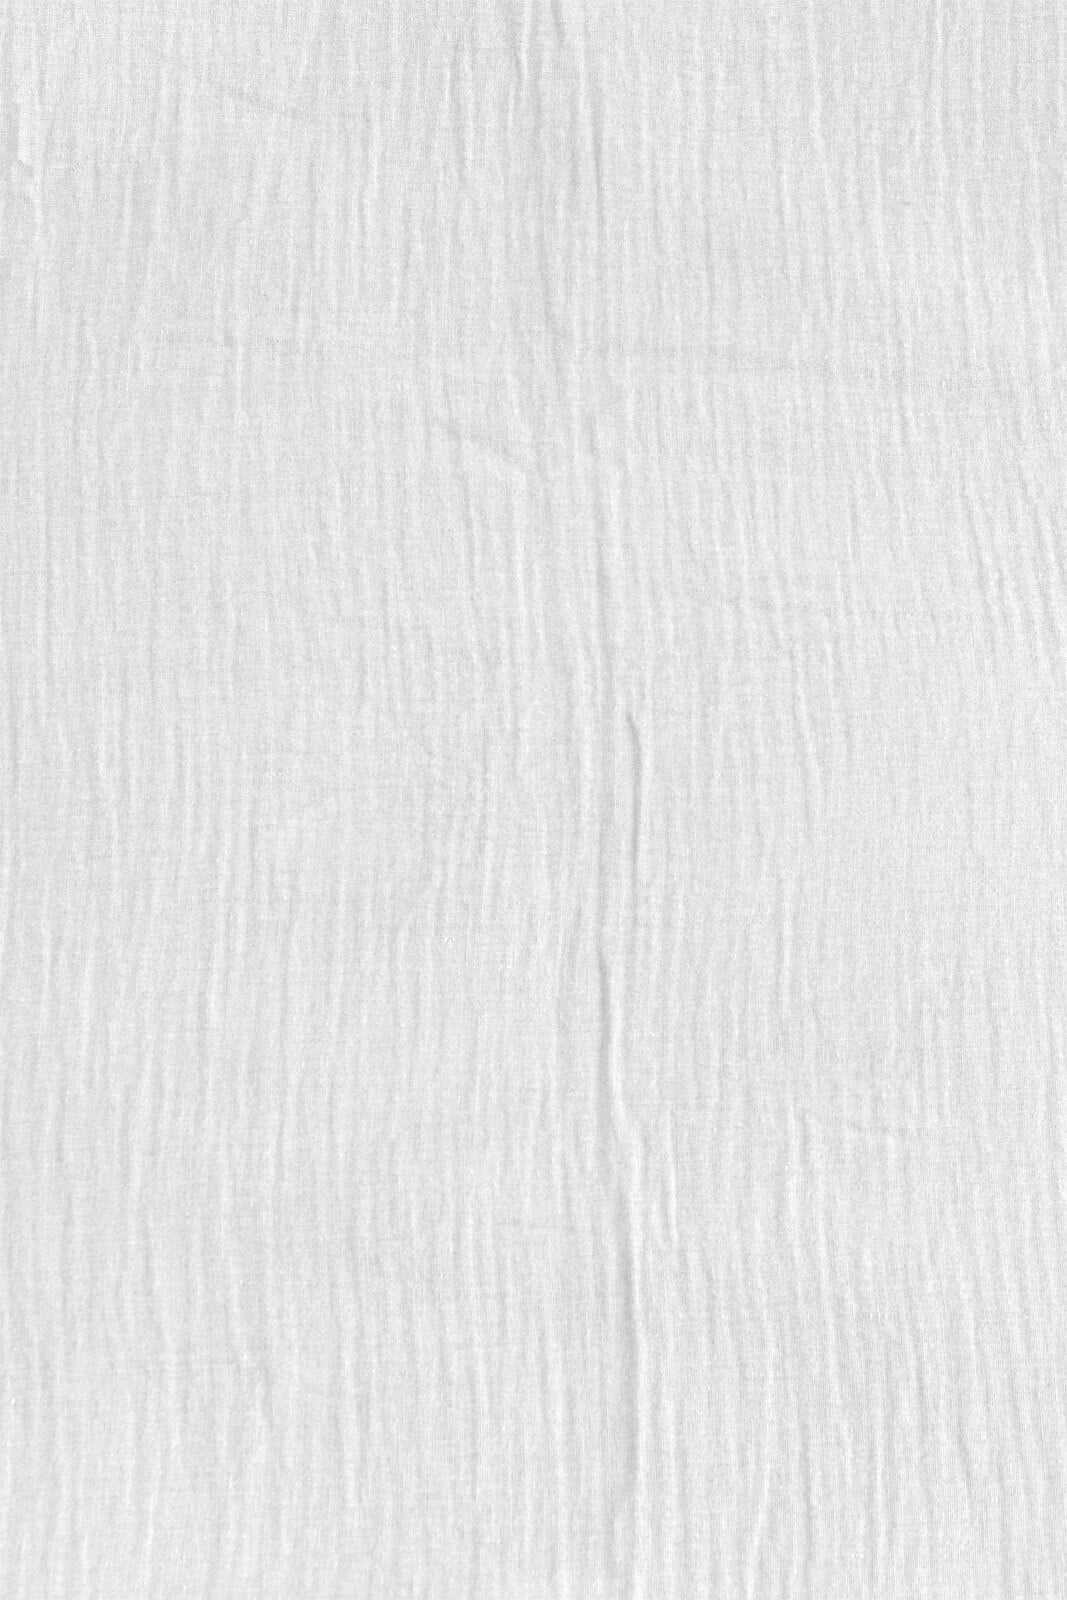 casaNOVA Musselin-Bettwäsche GRETA 135 x 200 cm weiß